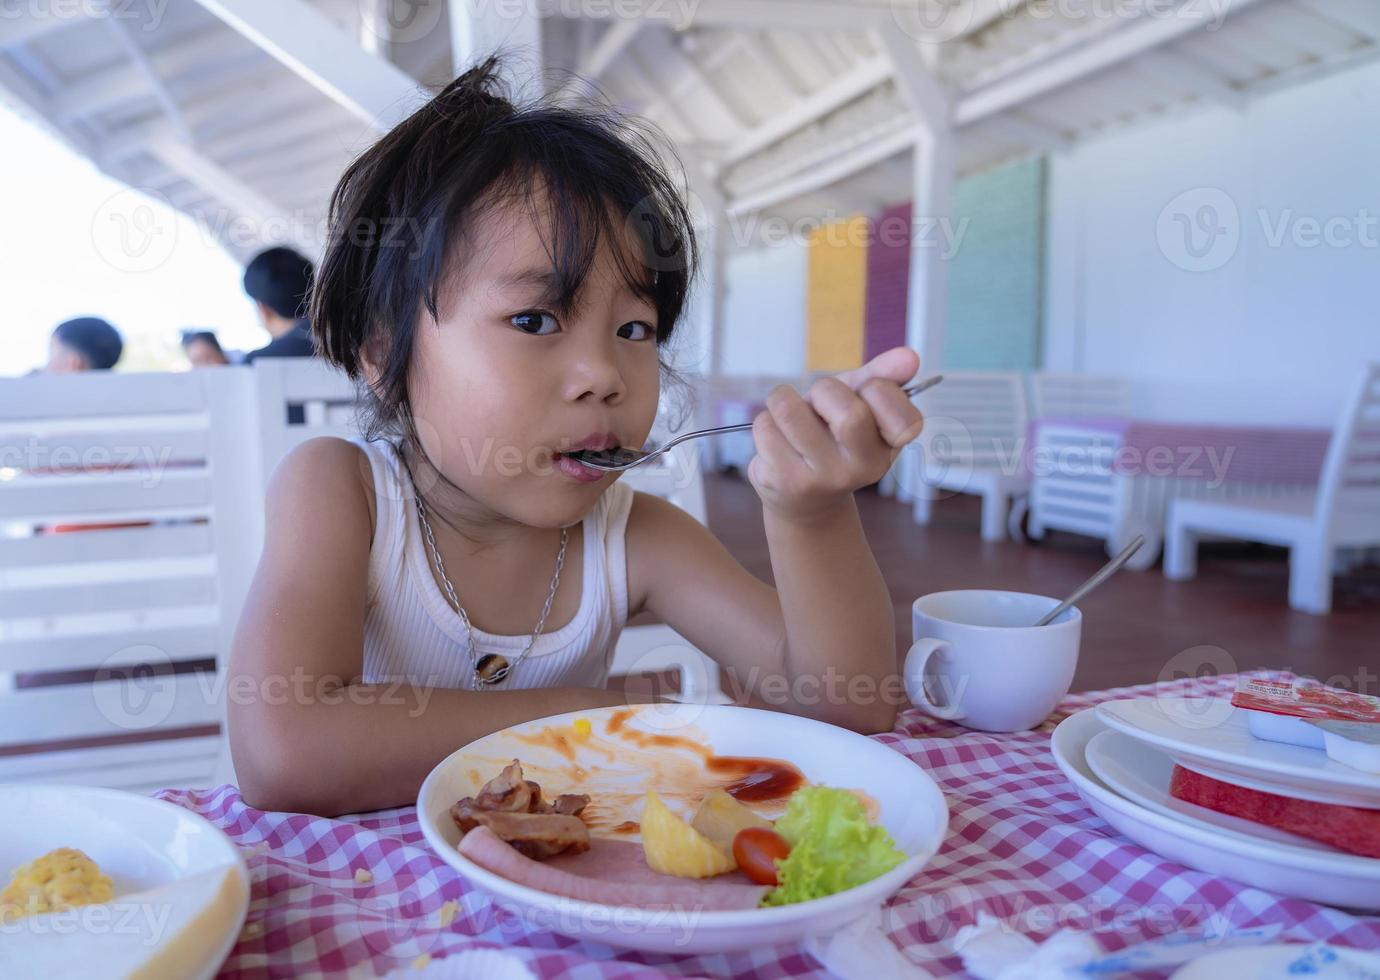 jolie petite fille enfant mangeant le petit déjeuner tenant une cuillère et tache la nourriture autour de sa bouche et regardant la caméra. petite femme affamée à l'heure du petit-déjeuner au restaurant. enfant et concept de saine alimentation. photo